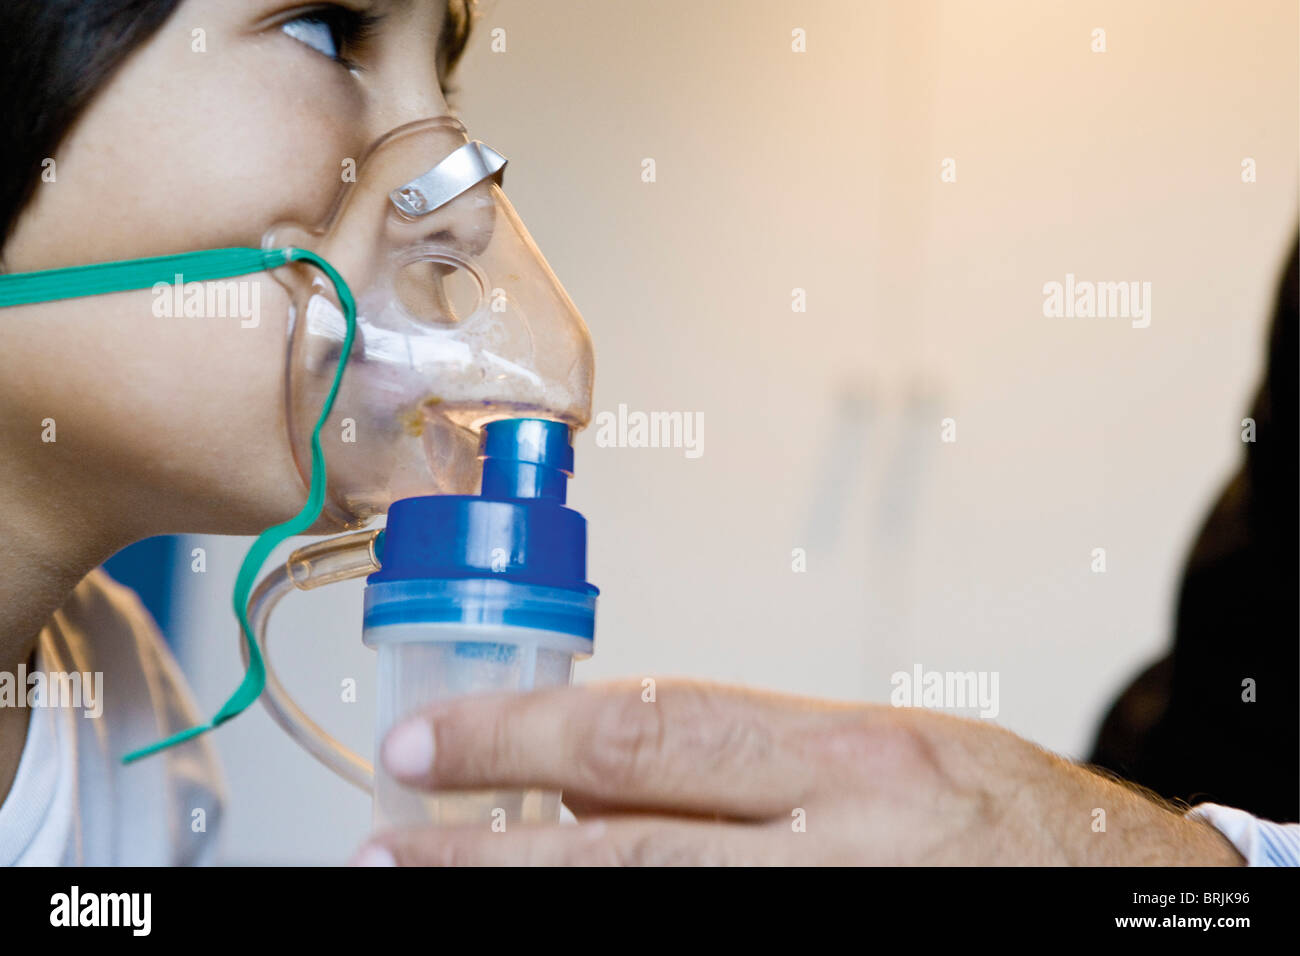 Boy receiving oxygen treatment Stock Photo